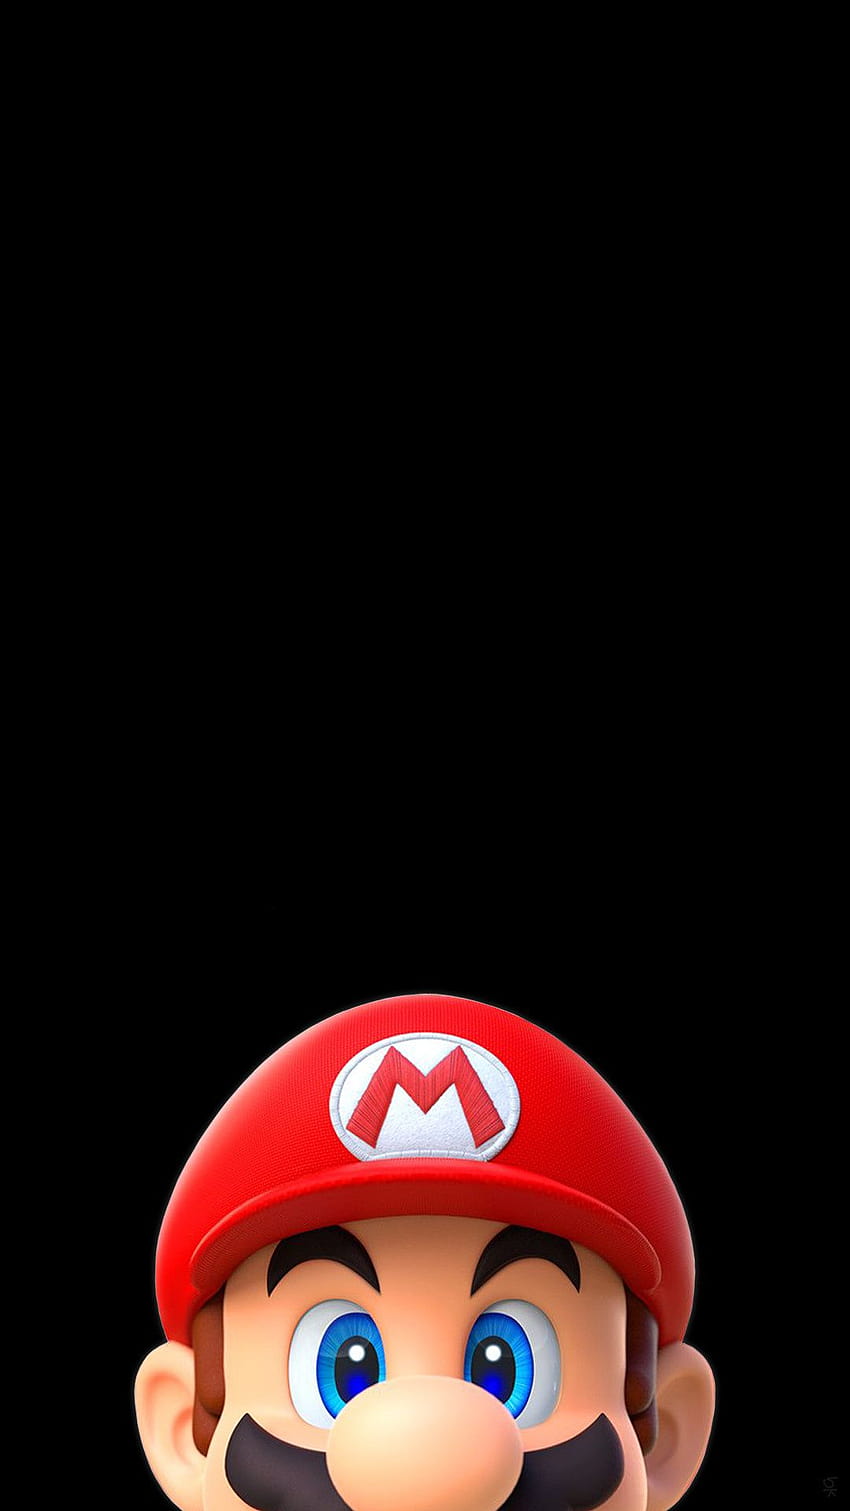 nostalgia] 12 Mario Bros teléfono, mario amoled fondo de pantalla del teléfono